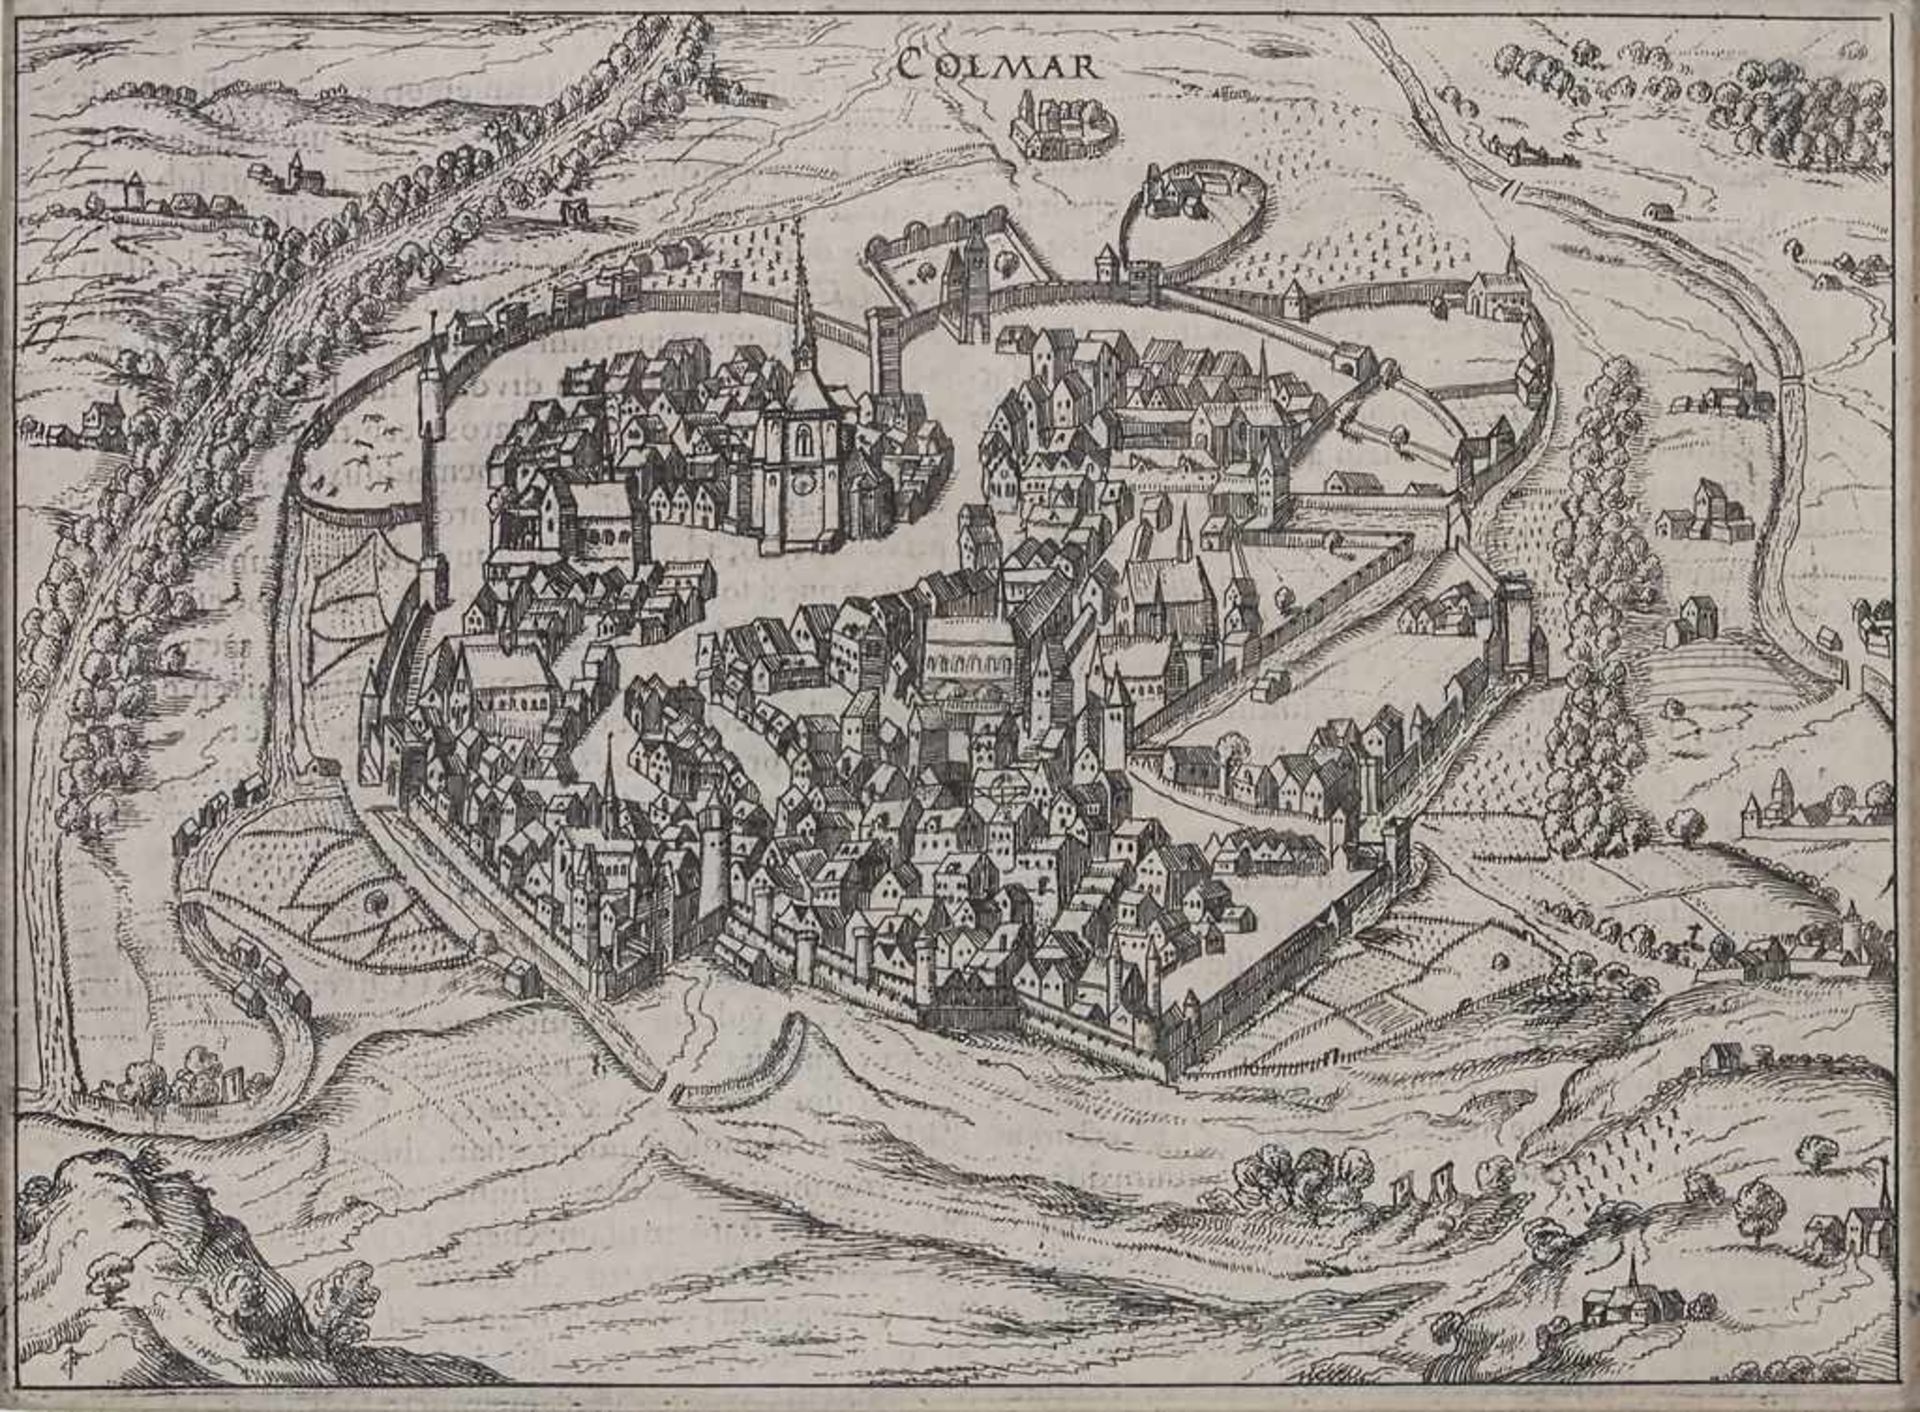 Petrus Bertius (1565-1629), historische Ansicht con Colmar / A historic view of Colmar